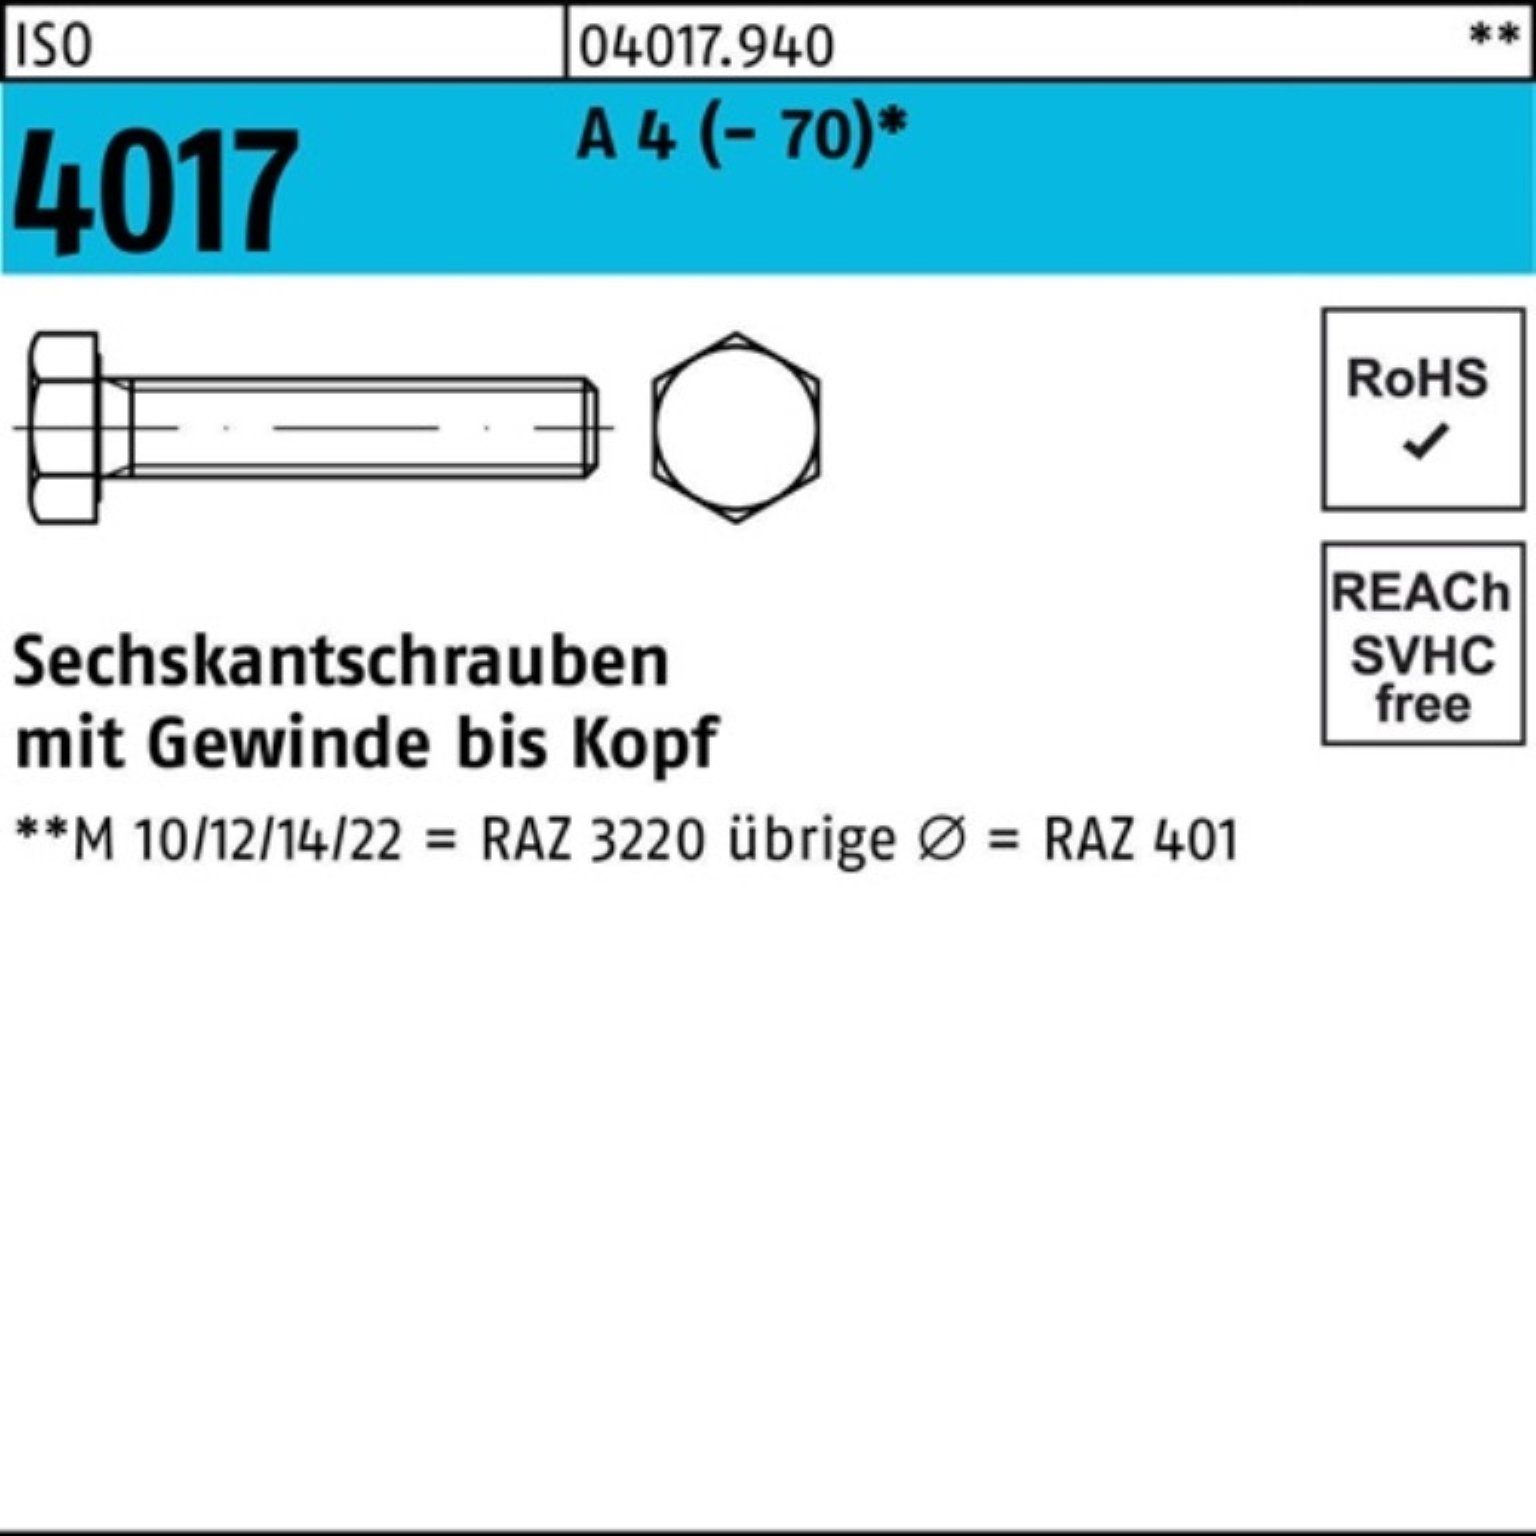 Bufab Sechskantschraube 100er Pack Sechskantschraube ISO 4017 VG M22x 75 A 4 (70) 1 Stück I